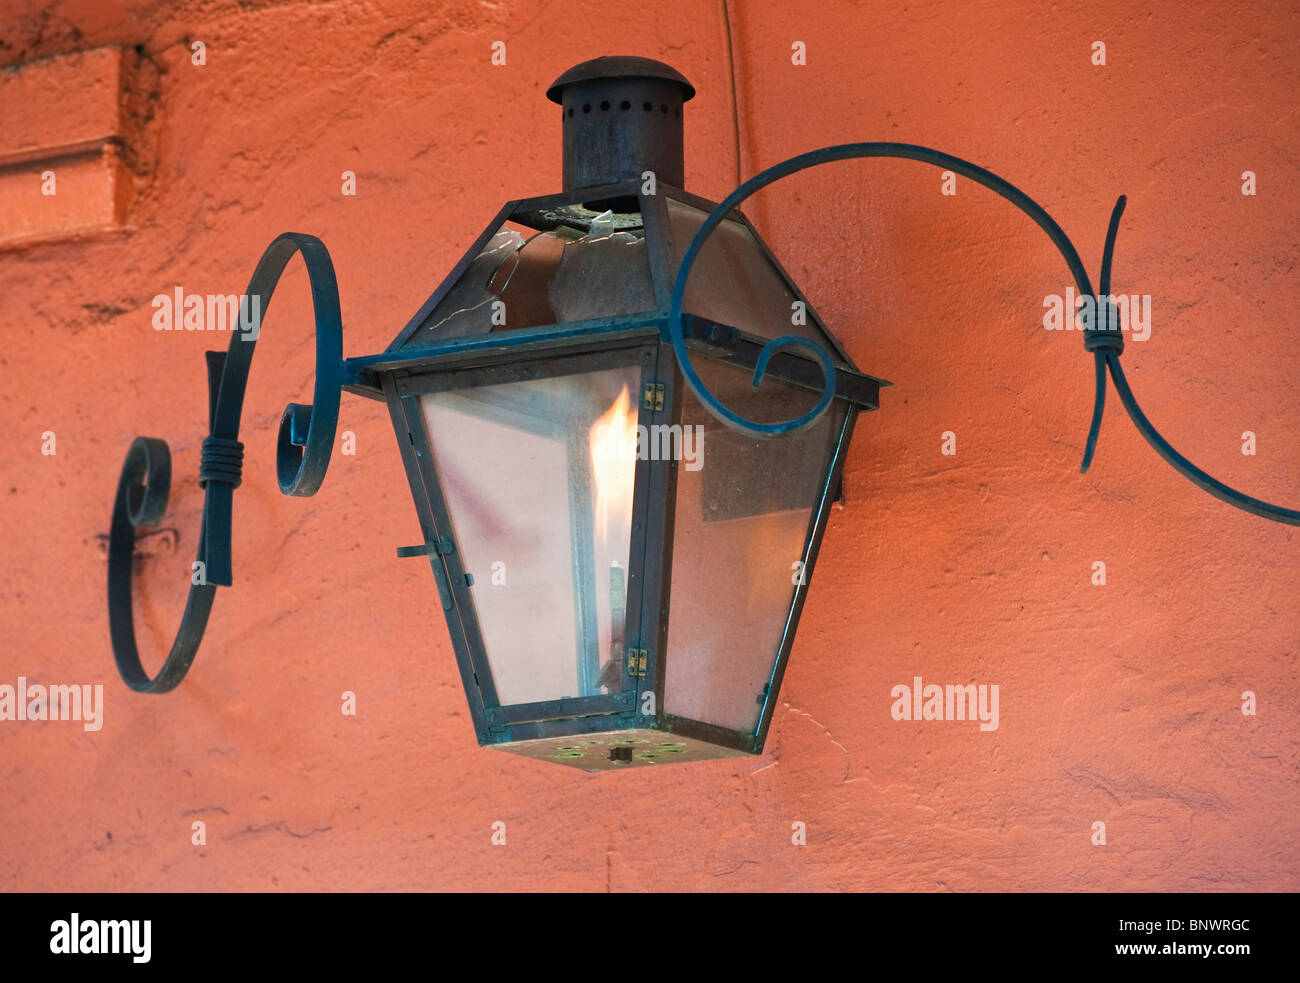 Lanterne sur un mur en stuc d'orange Banque D'Images